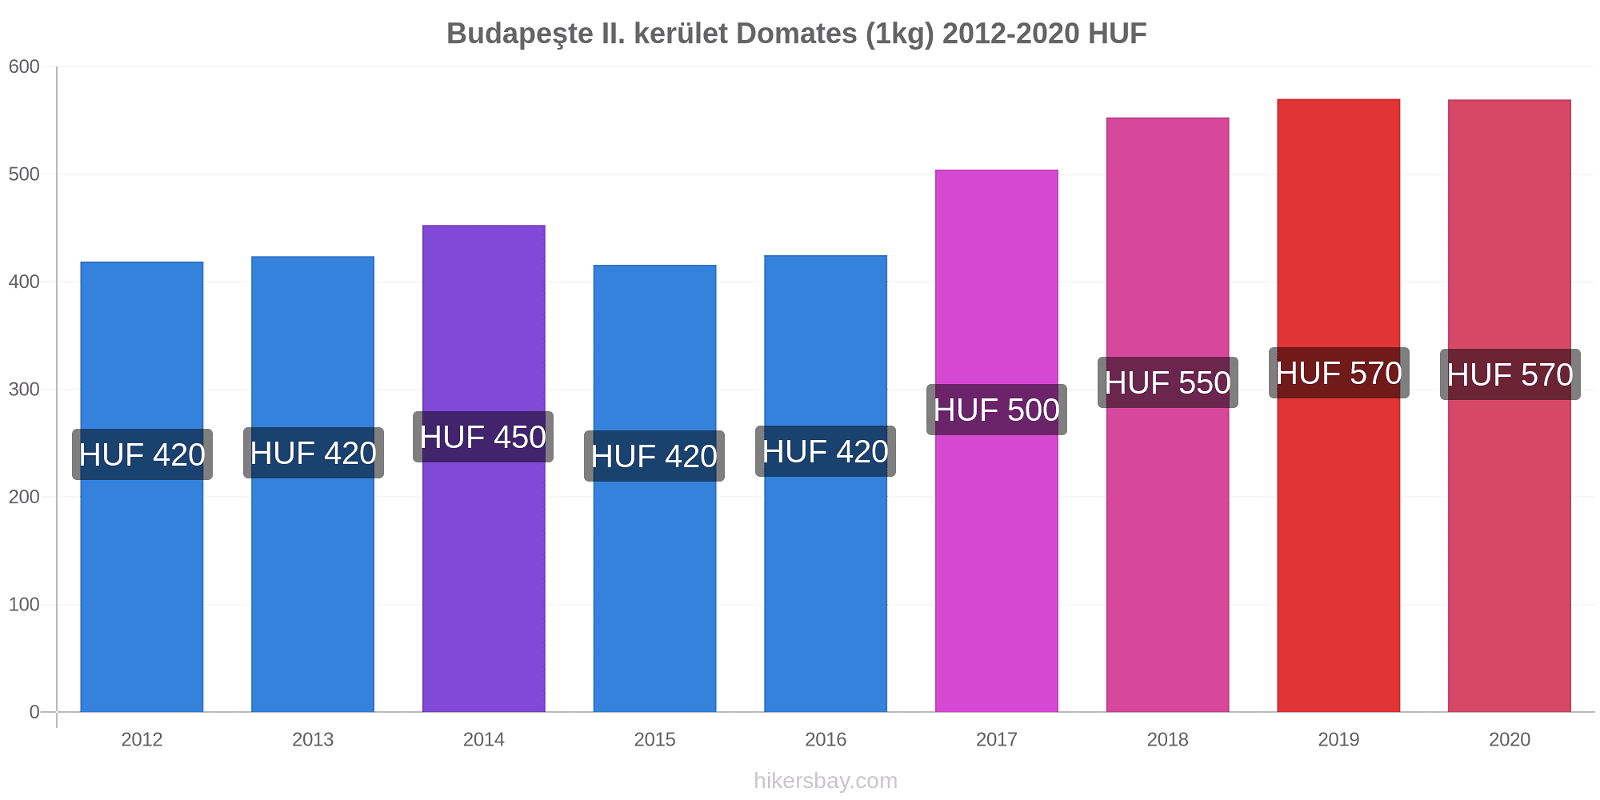 Budapeşte II. kerület fiyat değişiklikleri Domates (1kg) hikersbay.com